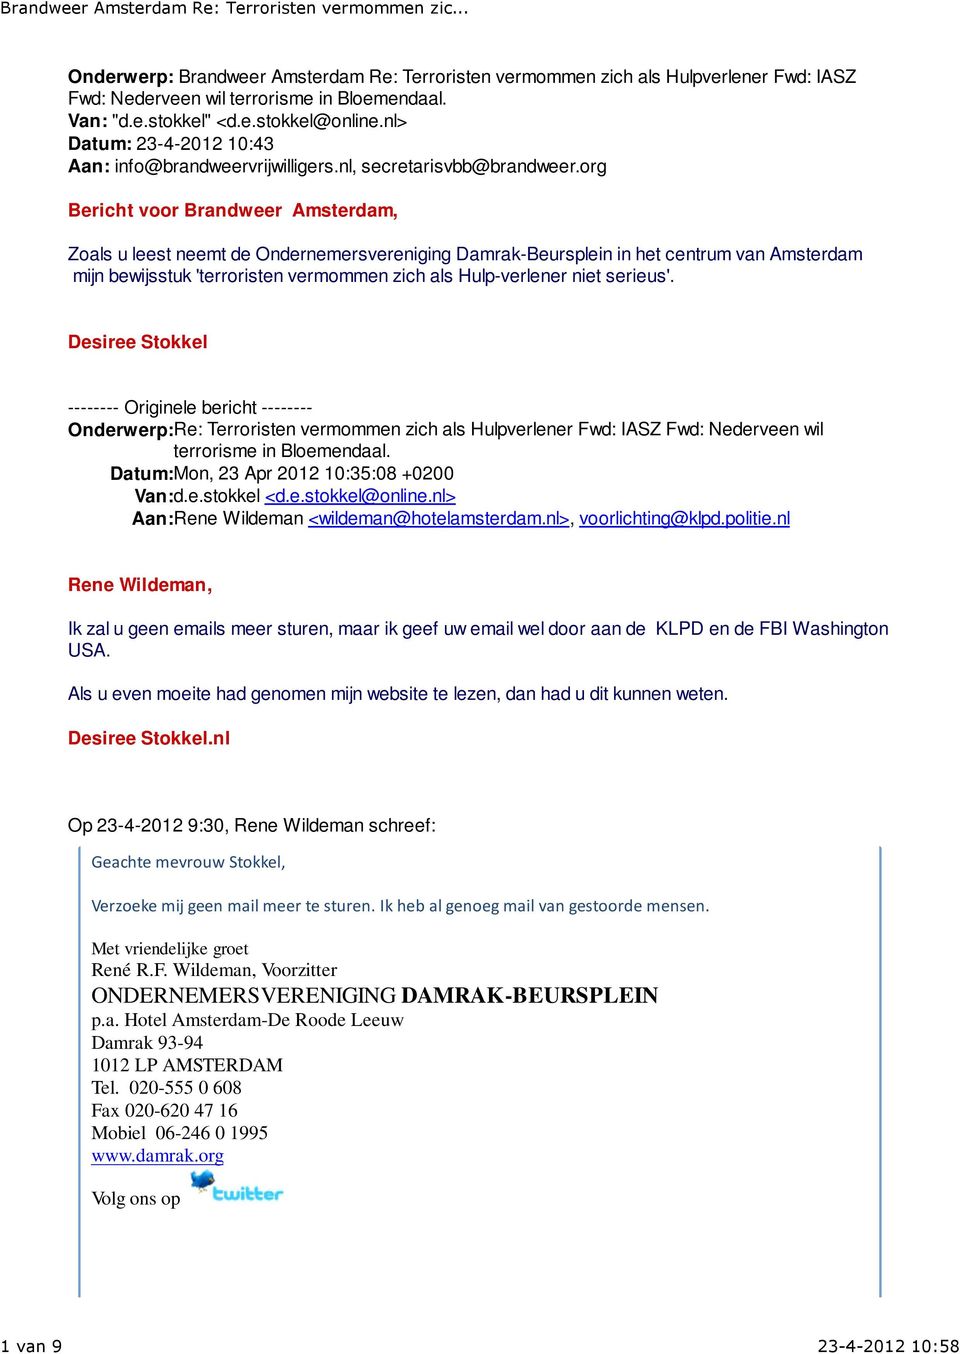 org Bericht voor Brandweer Amsterdam, Zoals u leest neemt de Ondernemersvereniging Damrak-Beursplein in het centrum van Amsterdam mijn bewijsstuk 'terroristen vermommen zich als Hulp-verlener niet